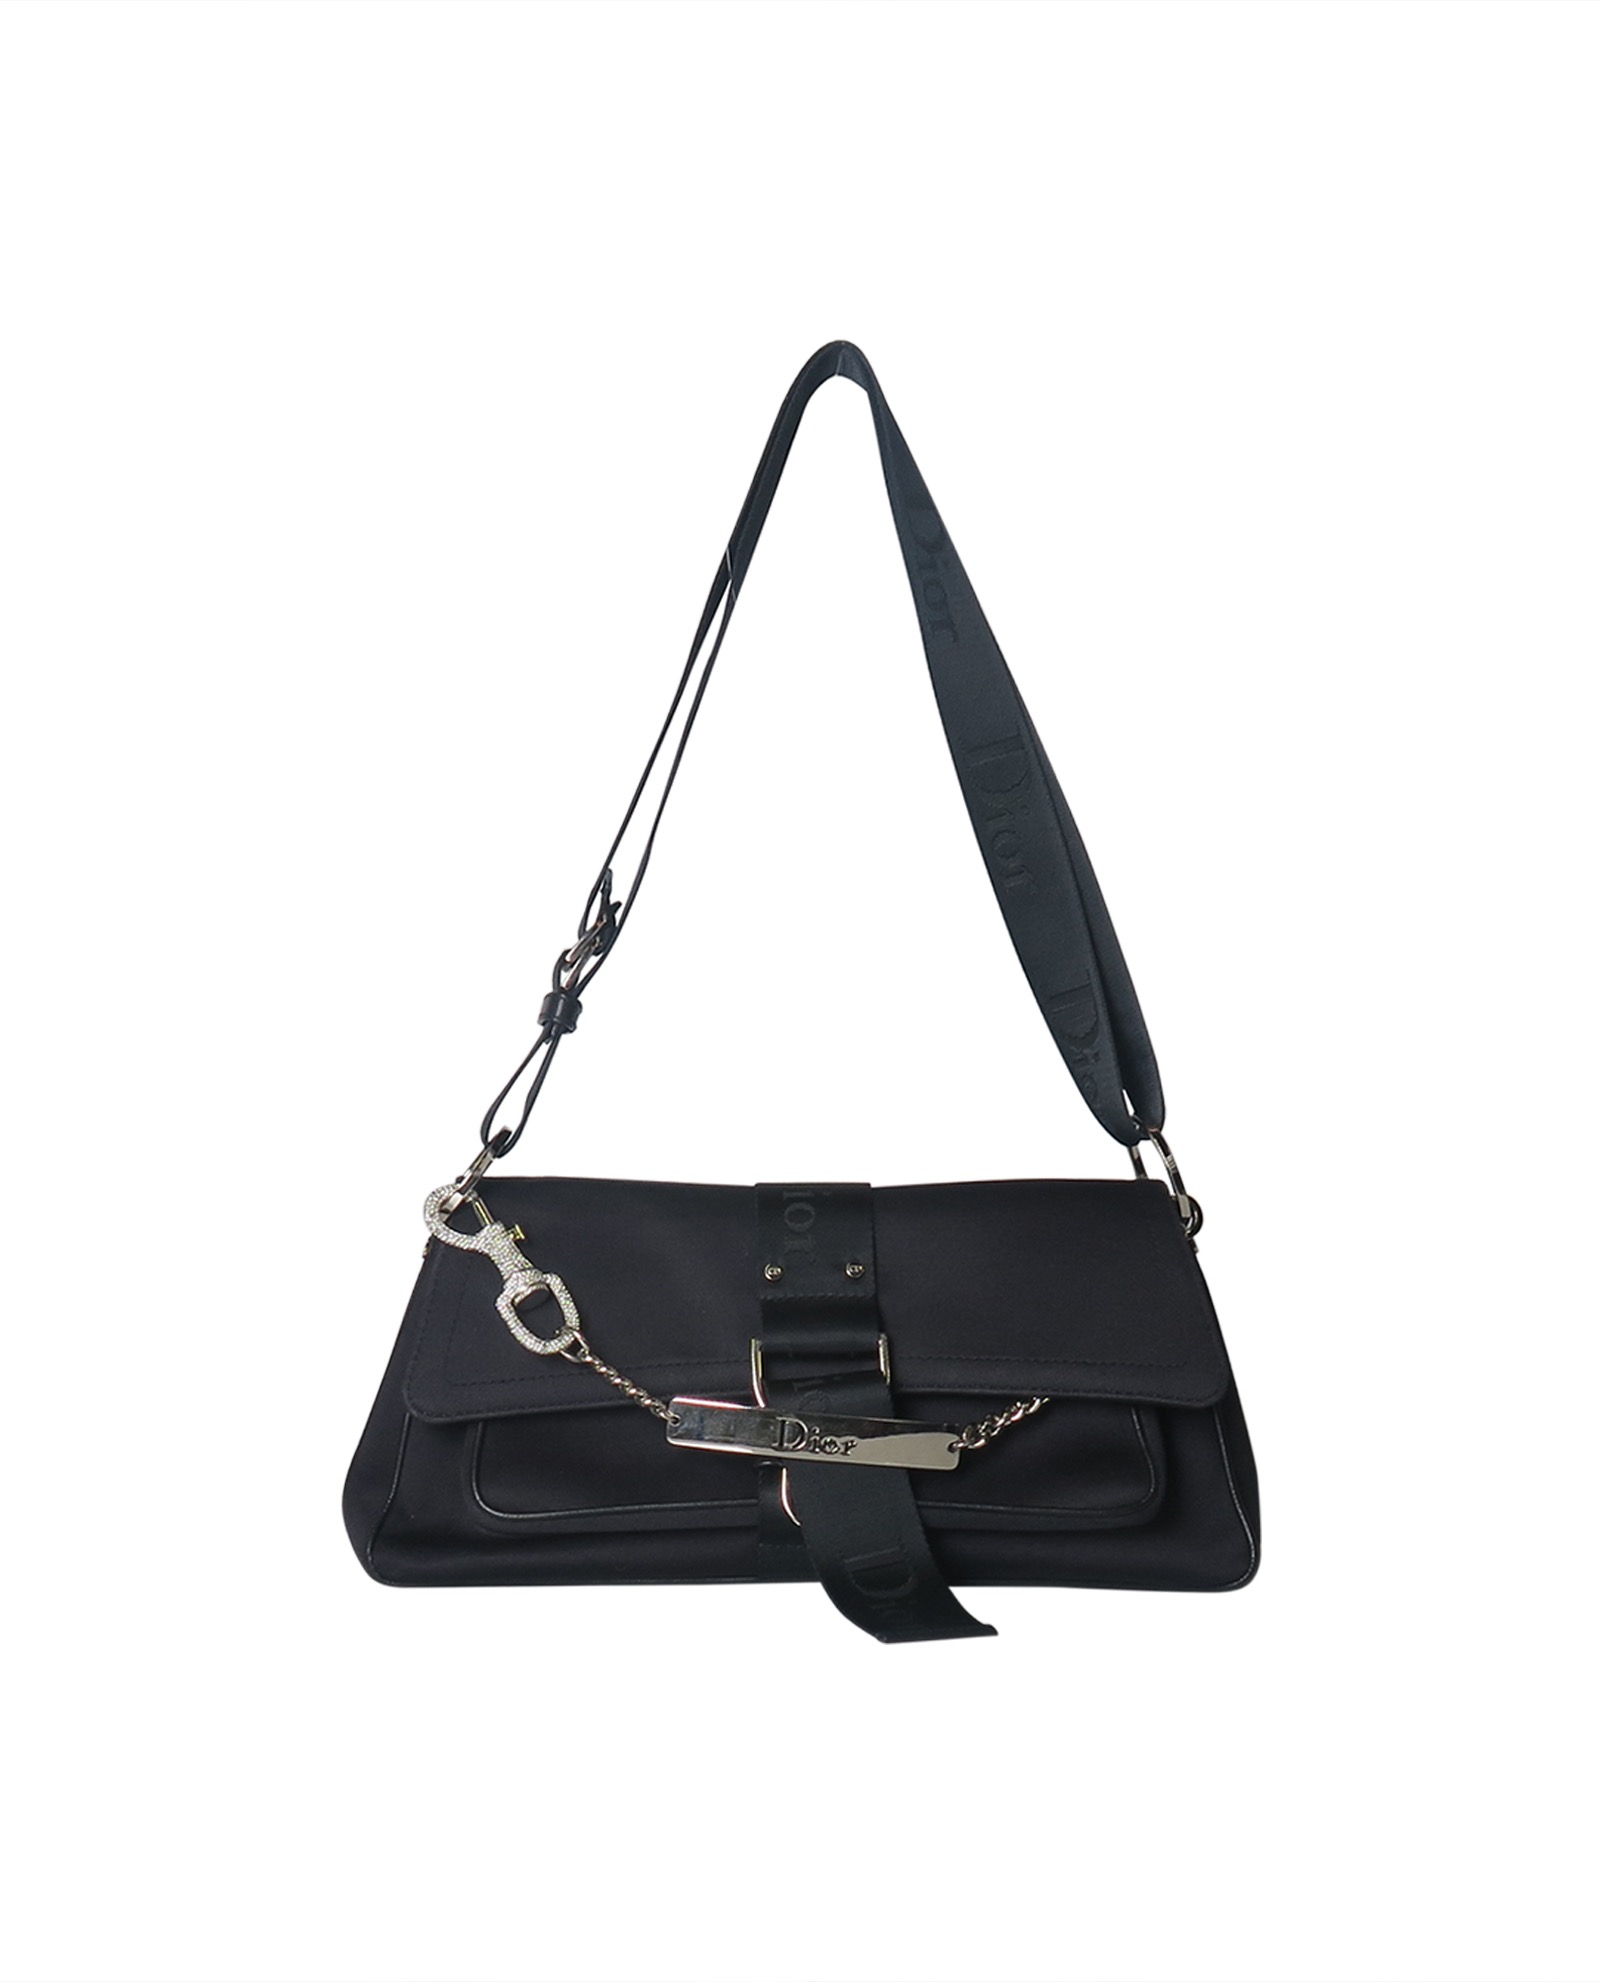 Dior Hardcore Vintage Black Jersey Handbag Bag With Crystals Chain